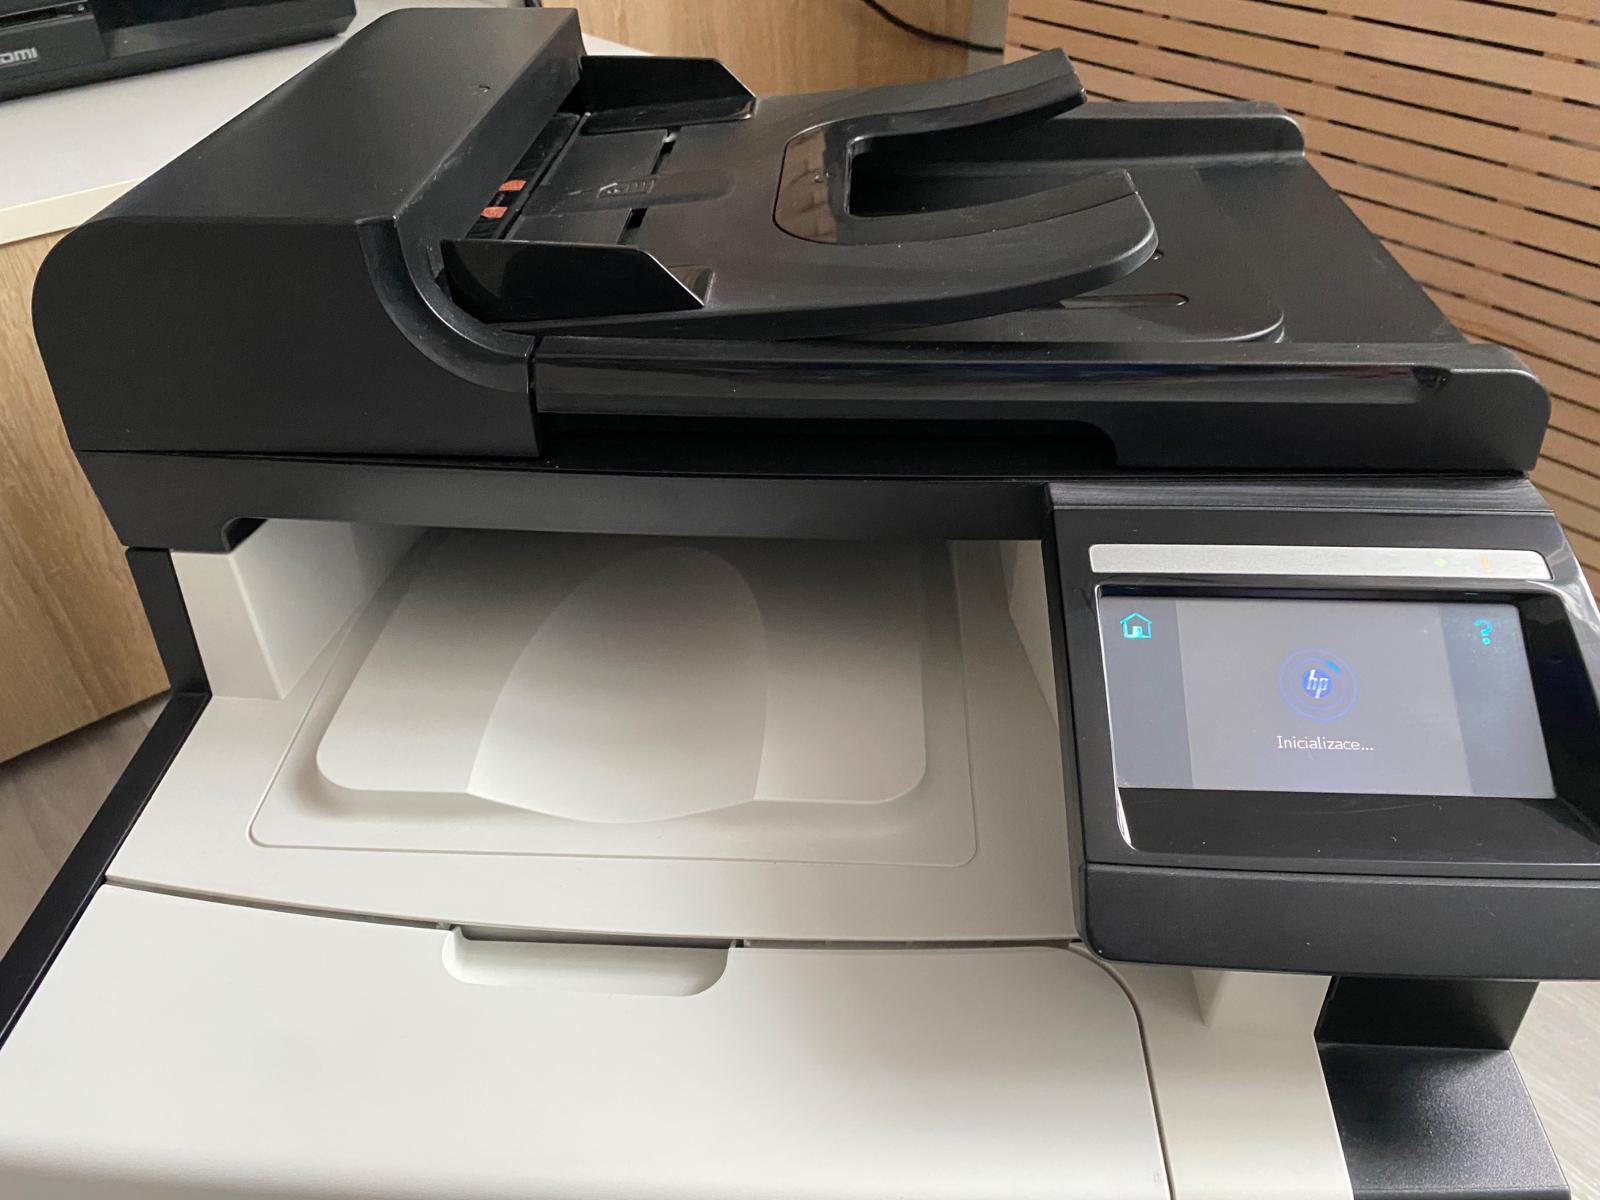 Barevná laserová tiskárna HP LaserJet Pro CM1415fn - Príslušenstvo k PC